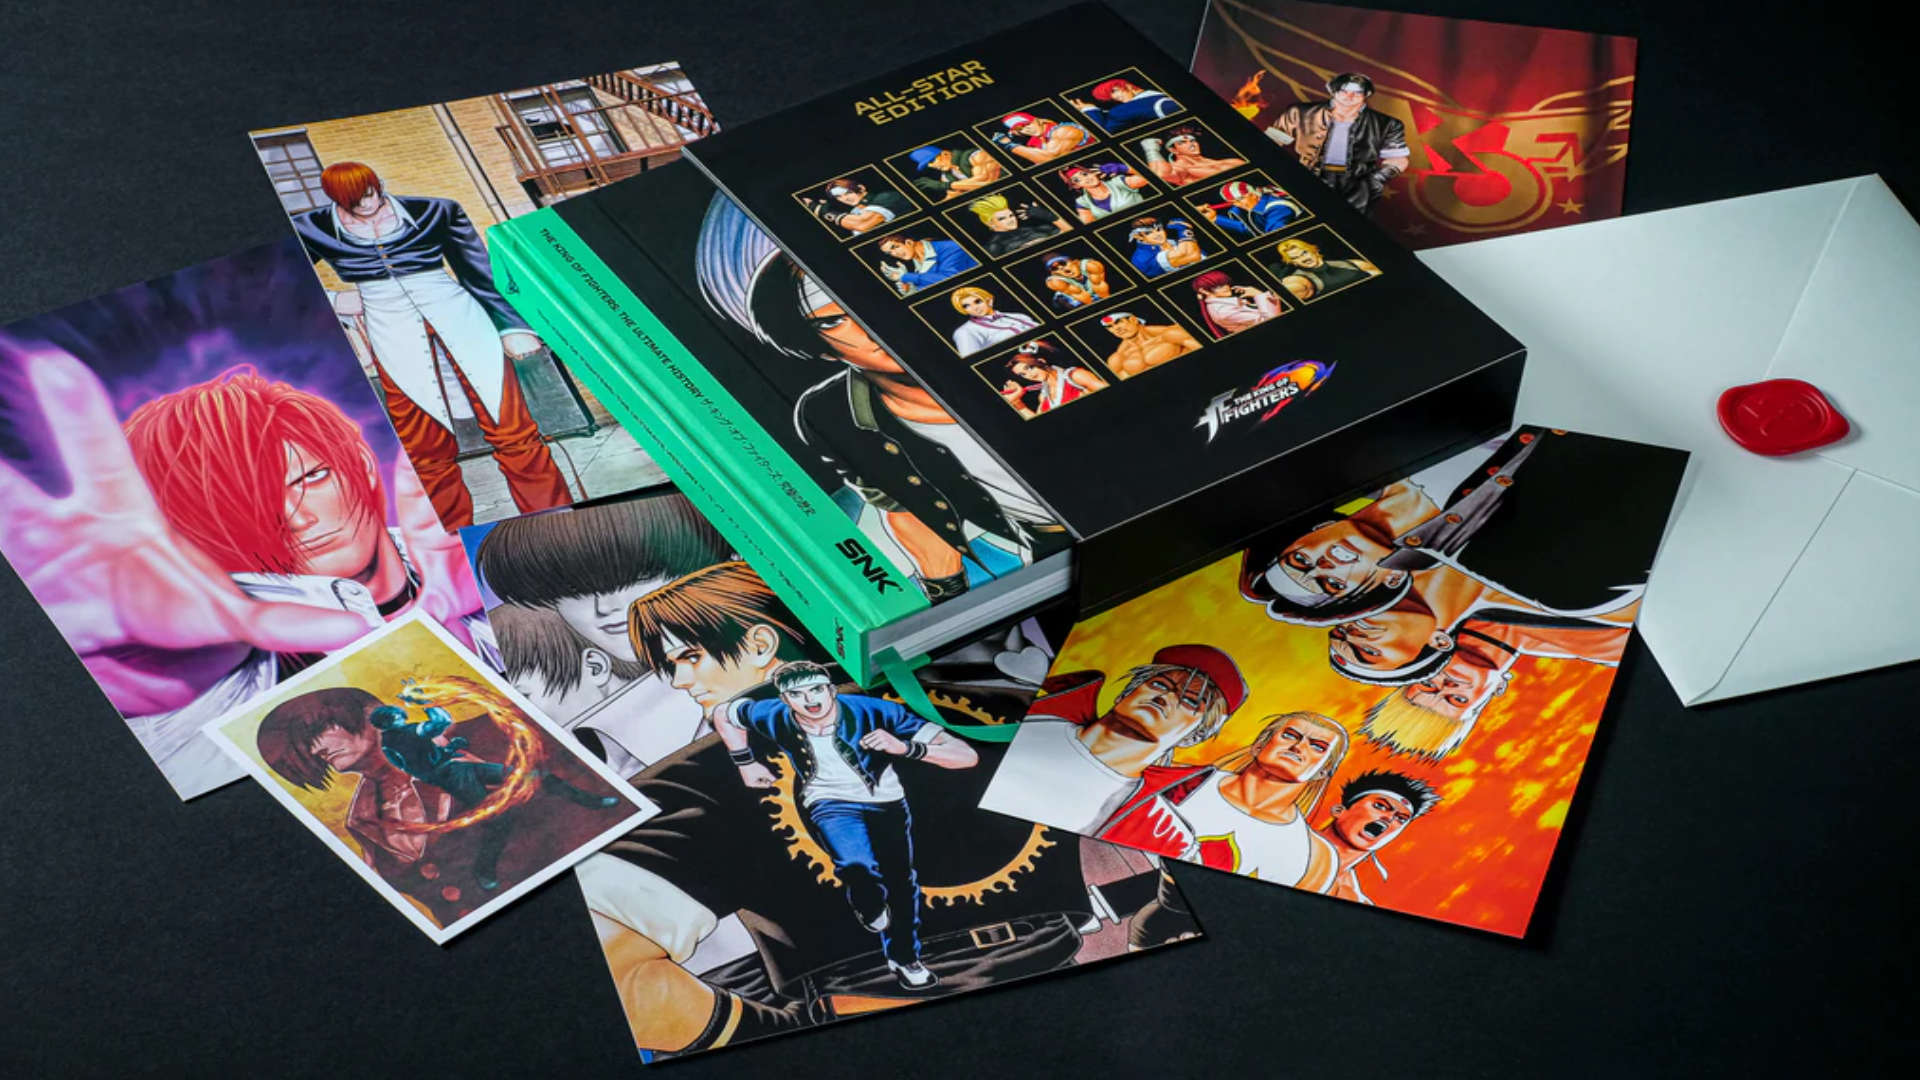 King of Fighters: Bitmap Books veröffentlicht neues Kompendium-Buch